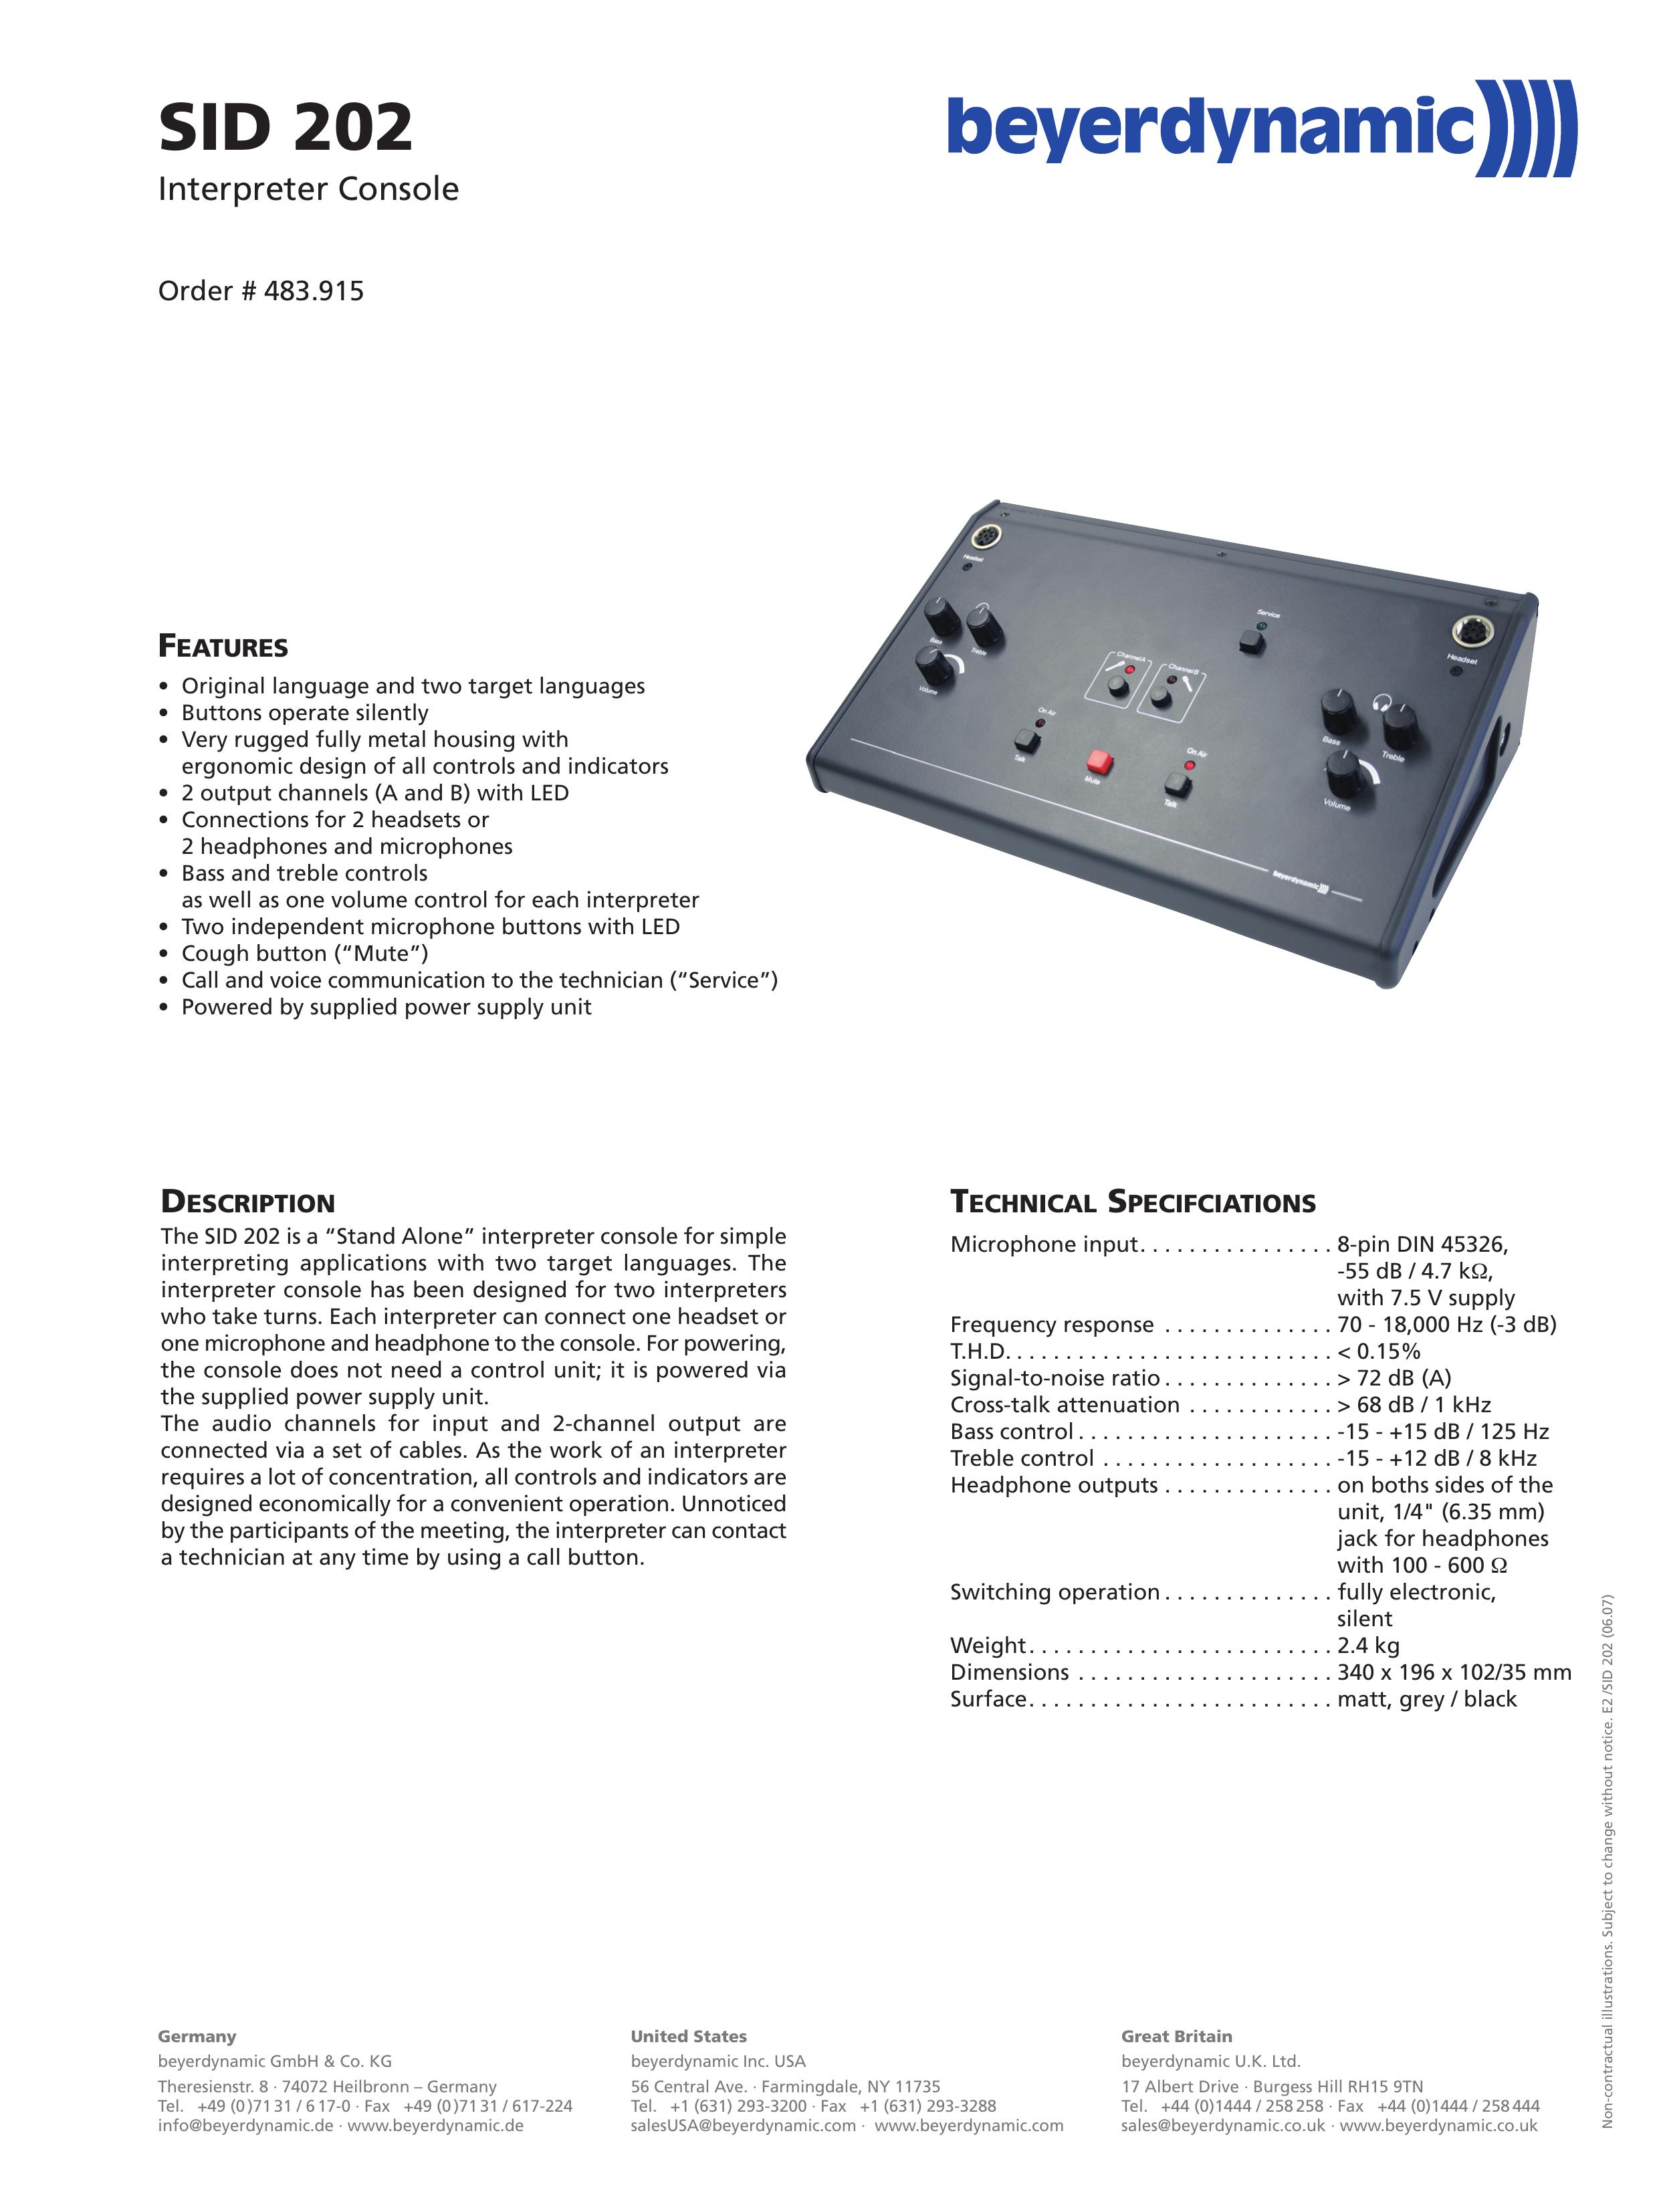 Beyerdynamic SID 202 Music Mixer User Manual